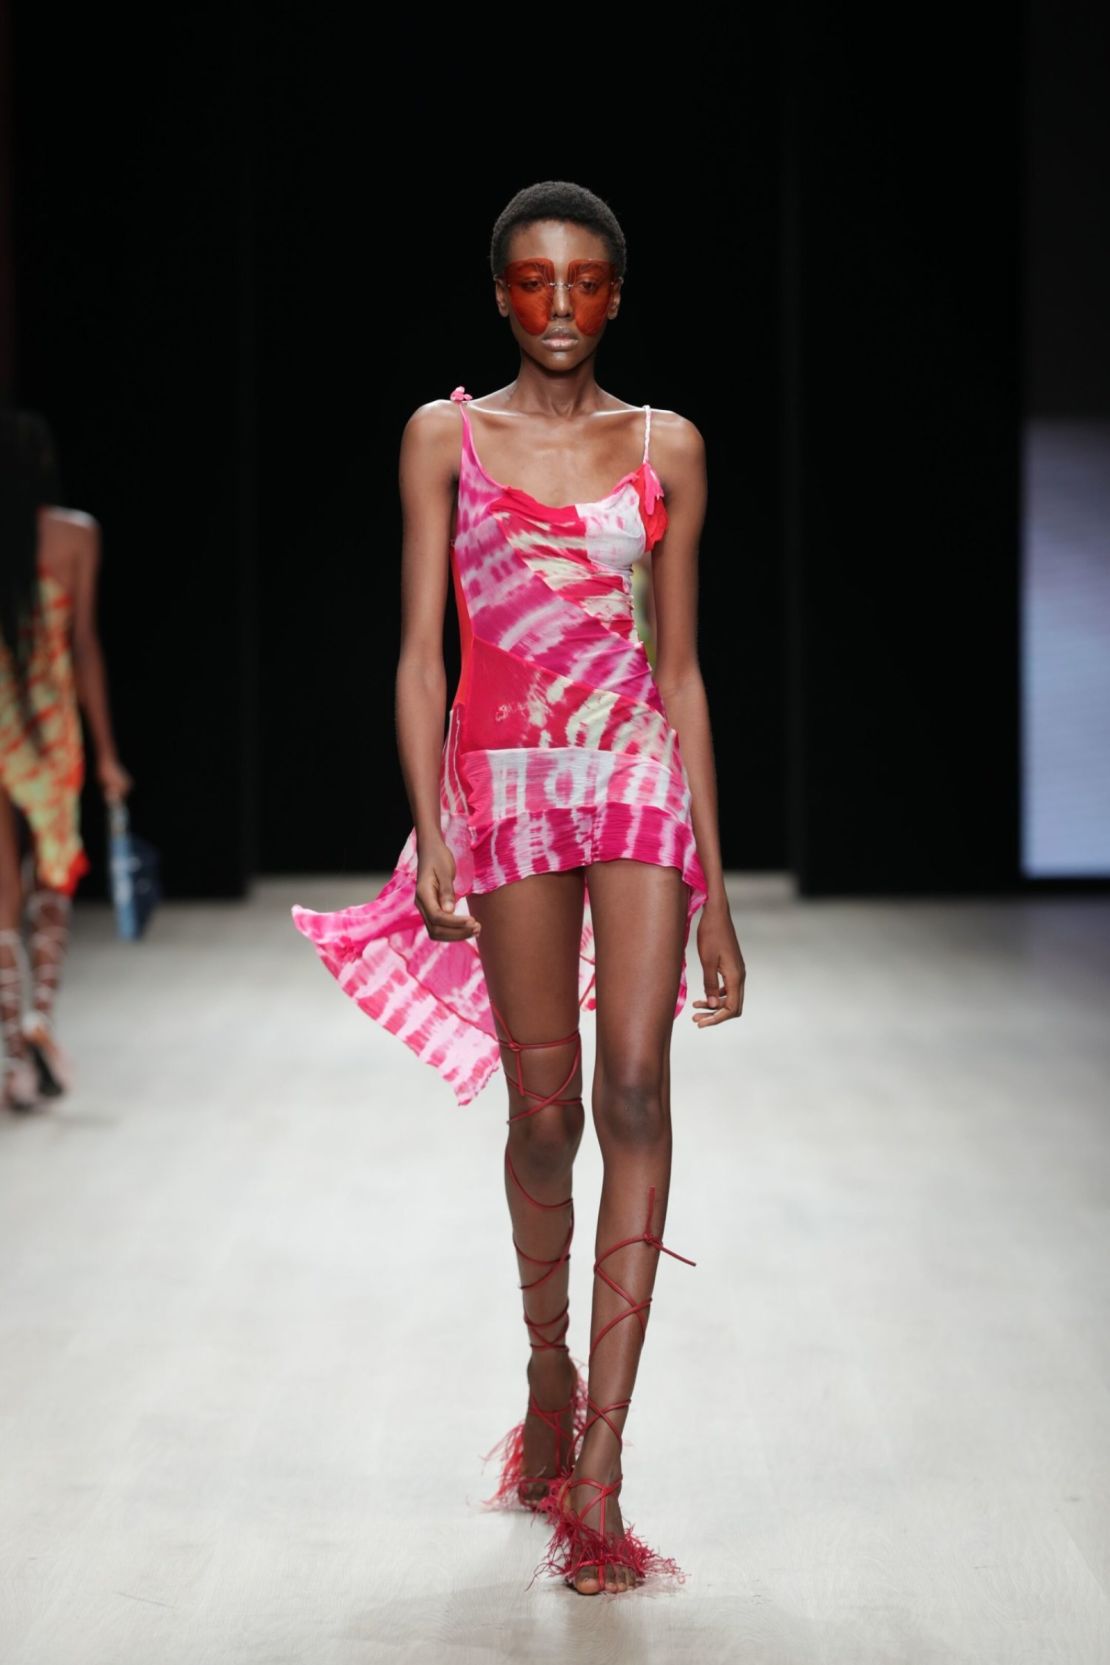 Asai's Lagos Hot Wok dress debut at Arise Fashion Week in Lagos, Nigeria